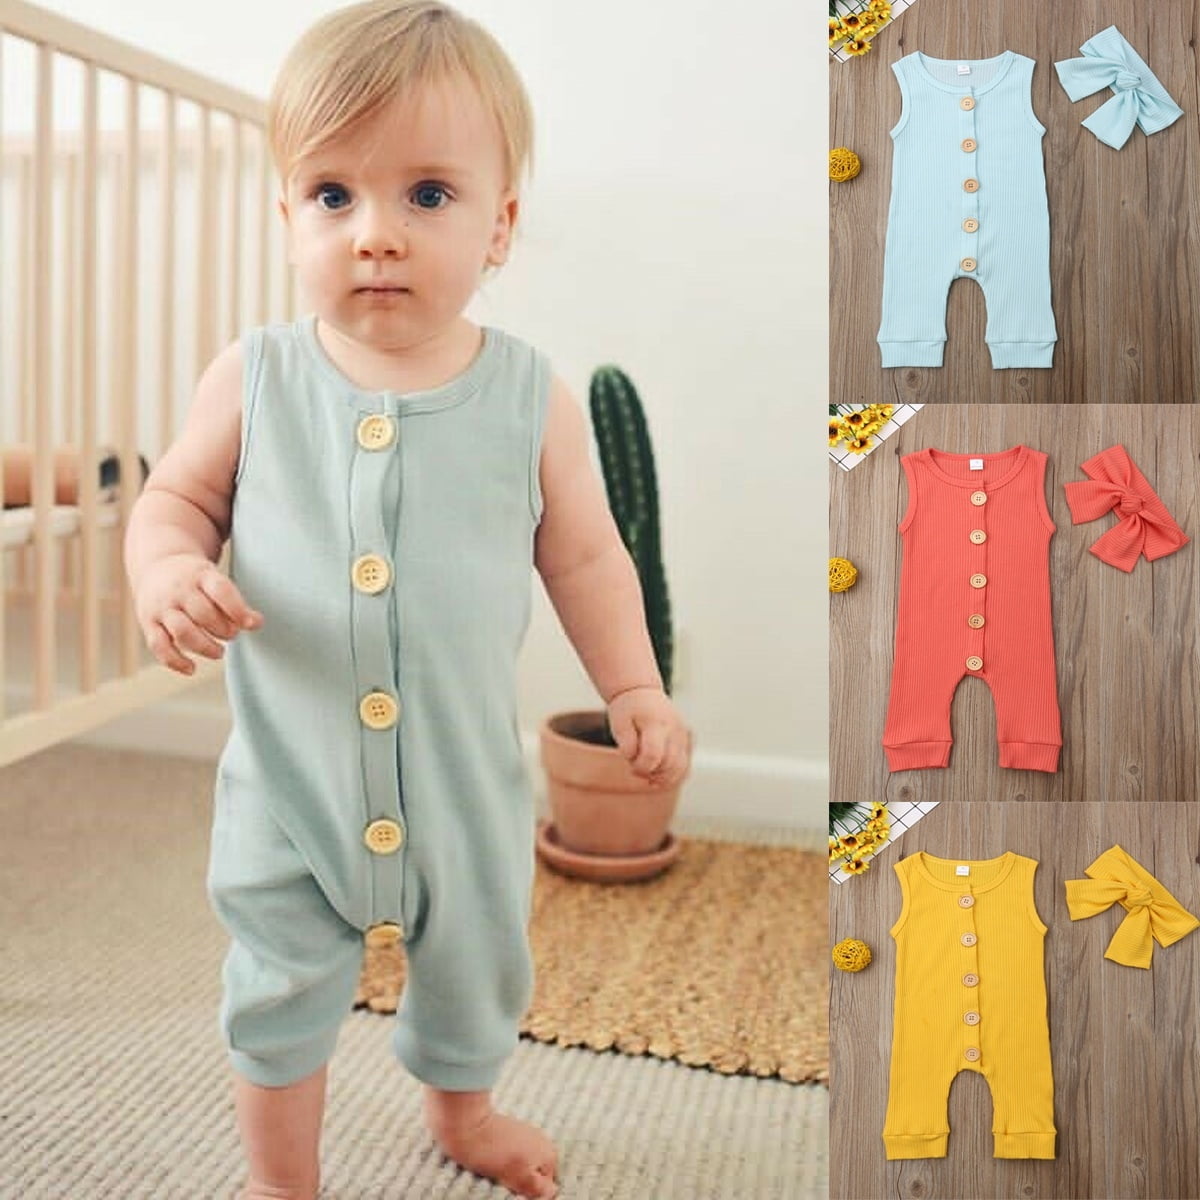 Newborn Kids Baby Girl Boy Clothes Infant Jumpsuit Cotton Romper Bodysuit Outfit 